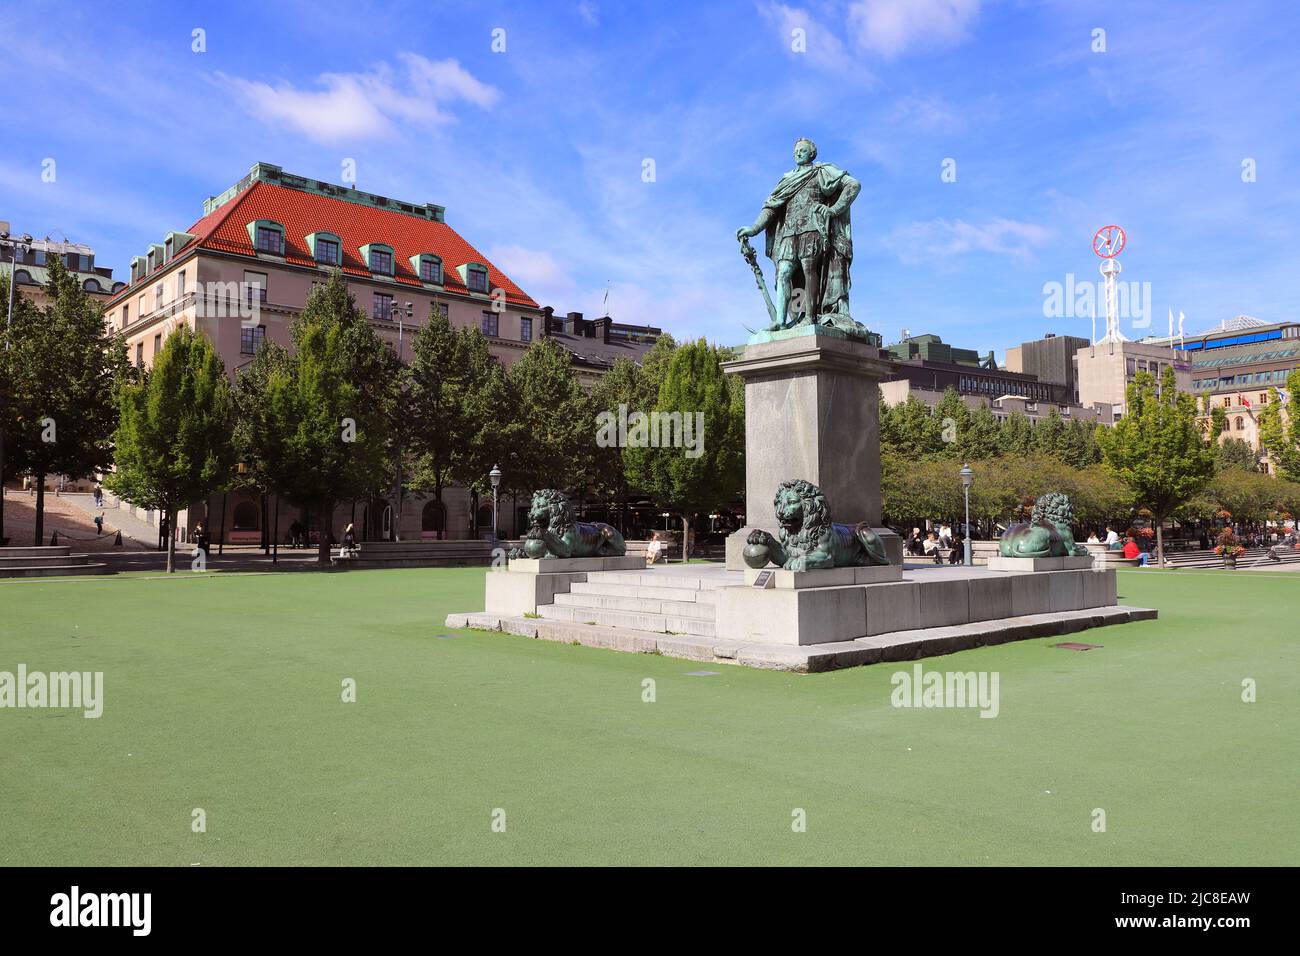 Stoccolma, Svezia - 1 settembre 2019: Statua del re svedese Carlo XIII situata nel parco di Kungstradgarne. Foto Stock